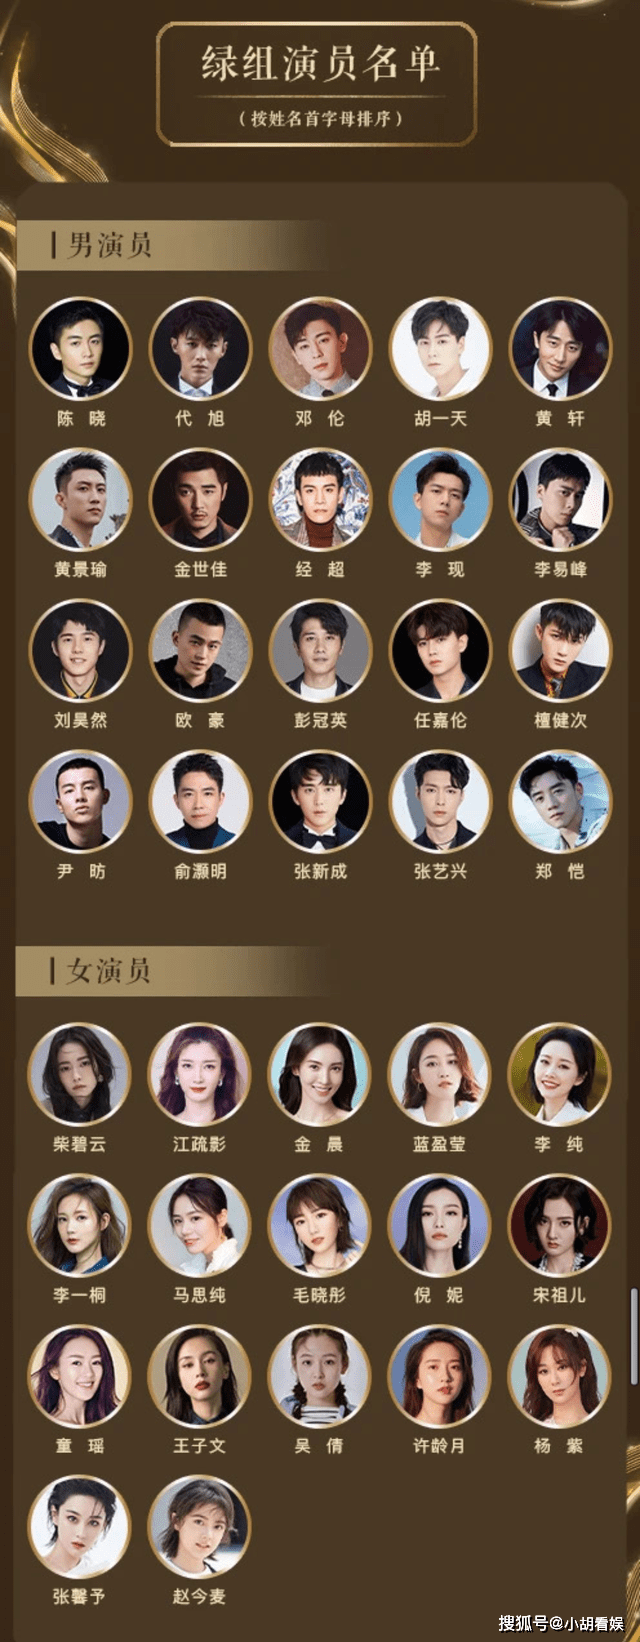 中国电视好演员入围名单公布,投票通道15日24点整开通